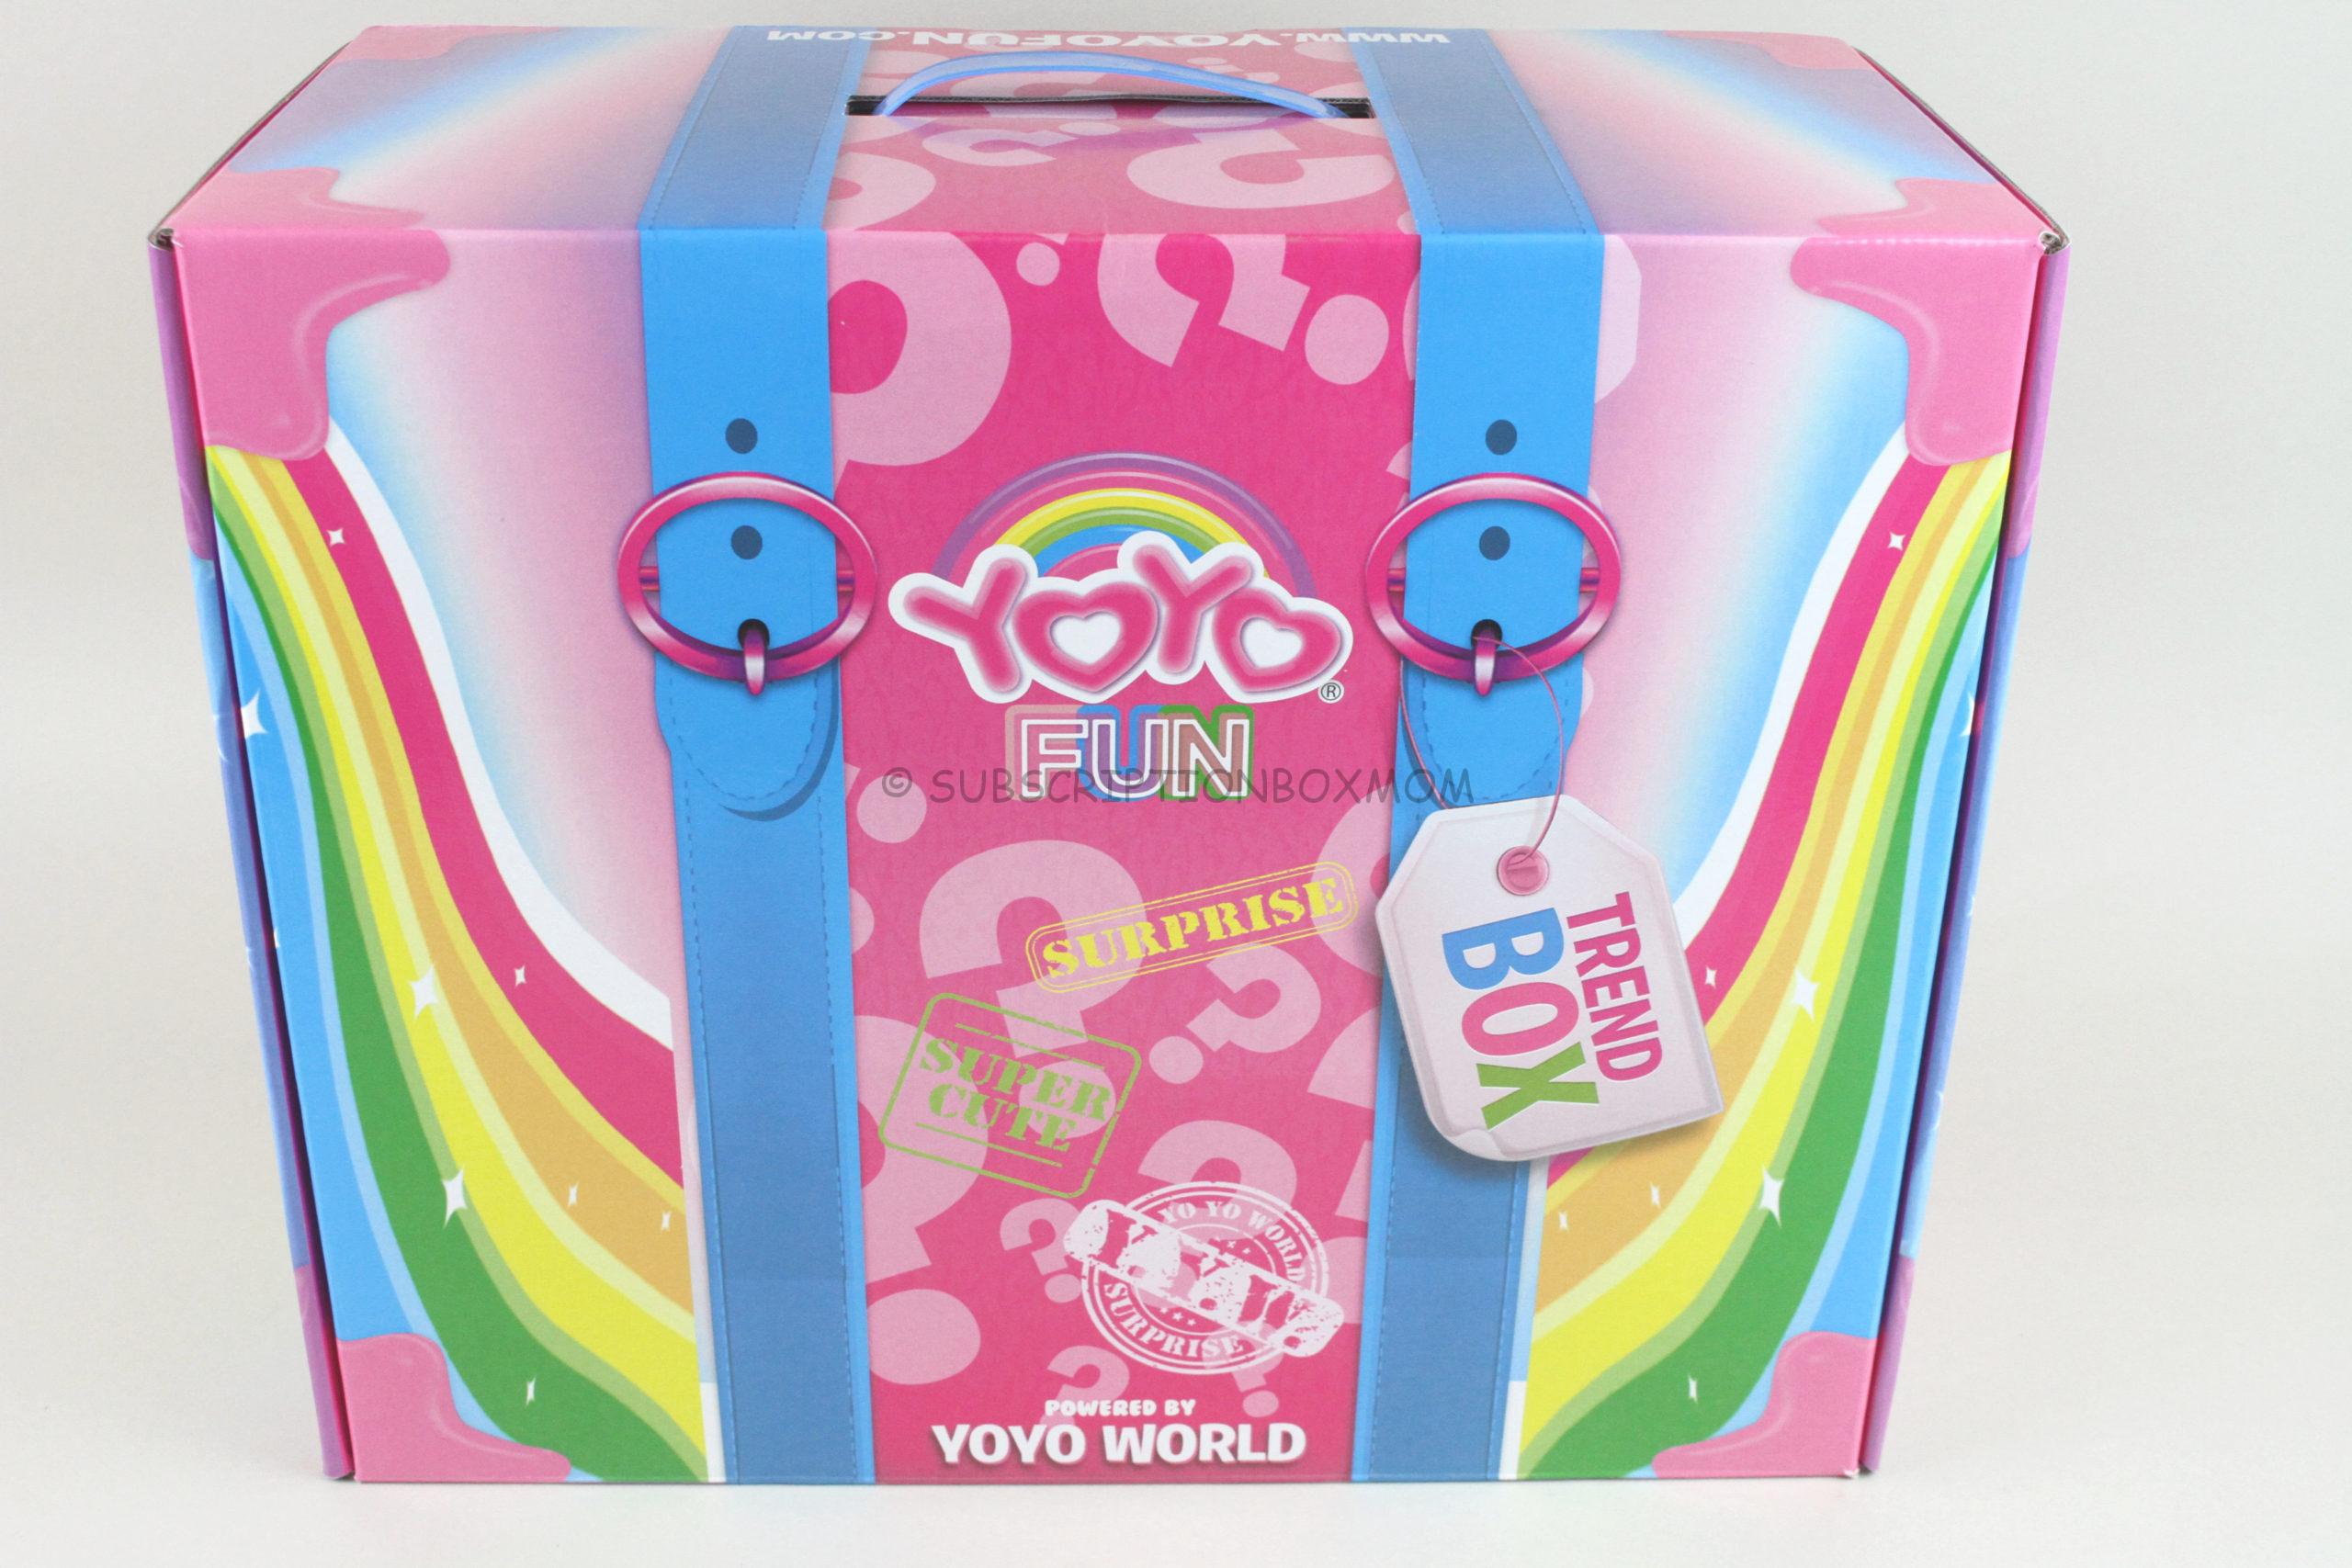 YoYoFun Mystery Trend Box July 2020 Review » Box